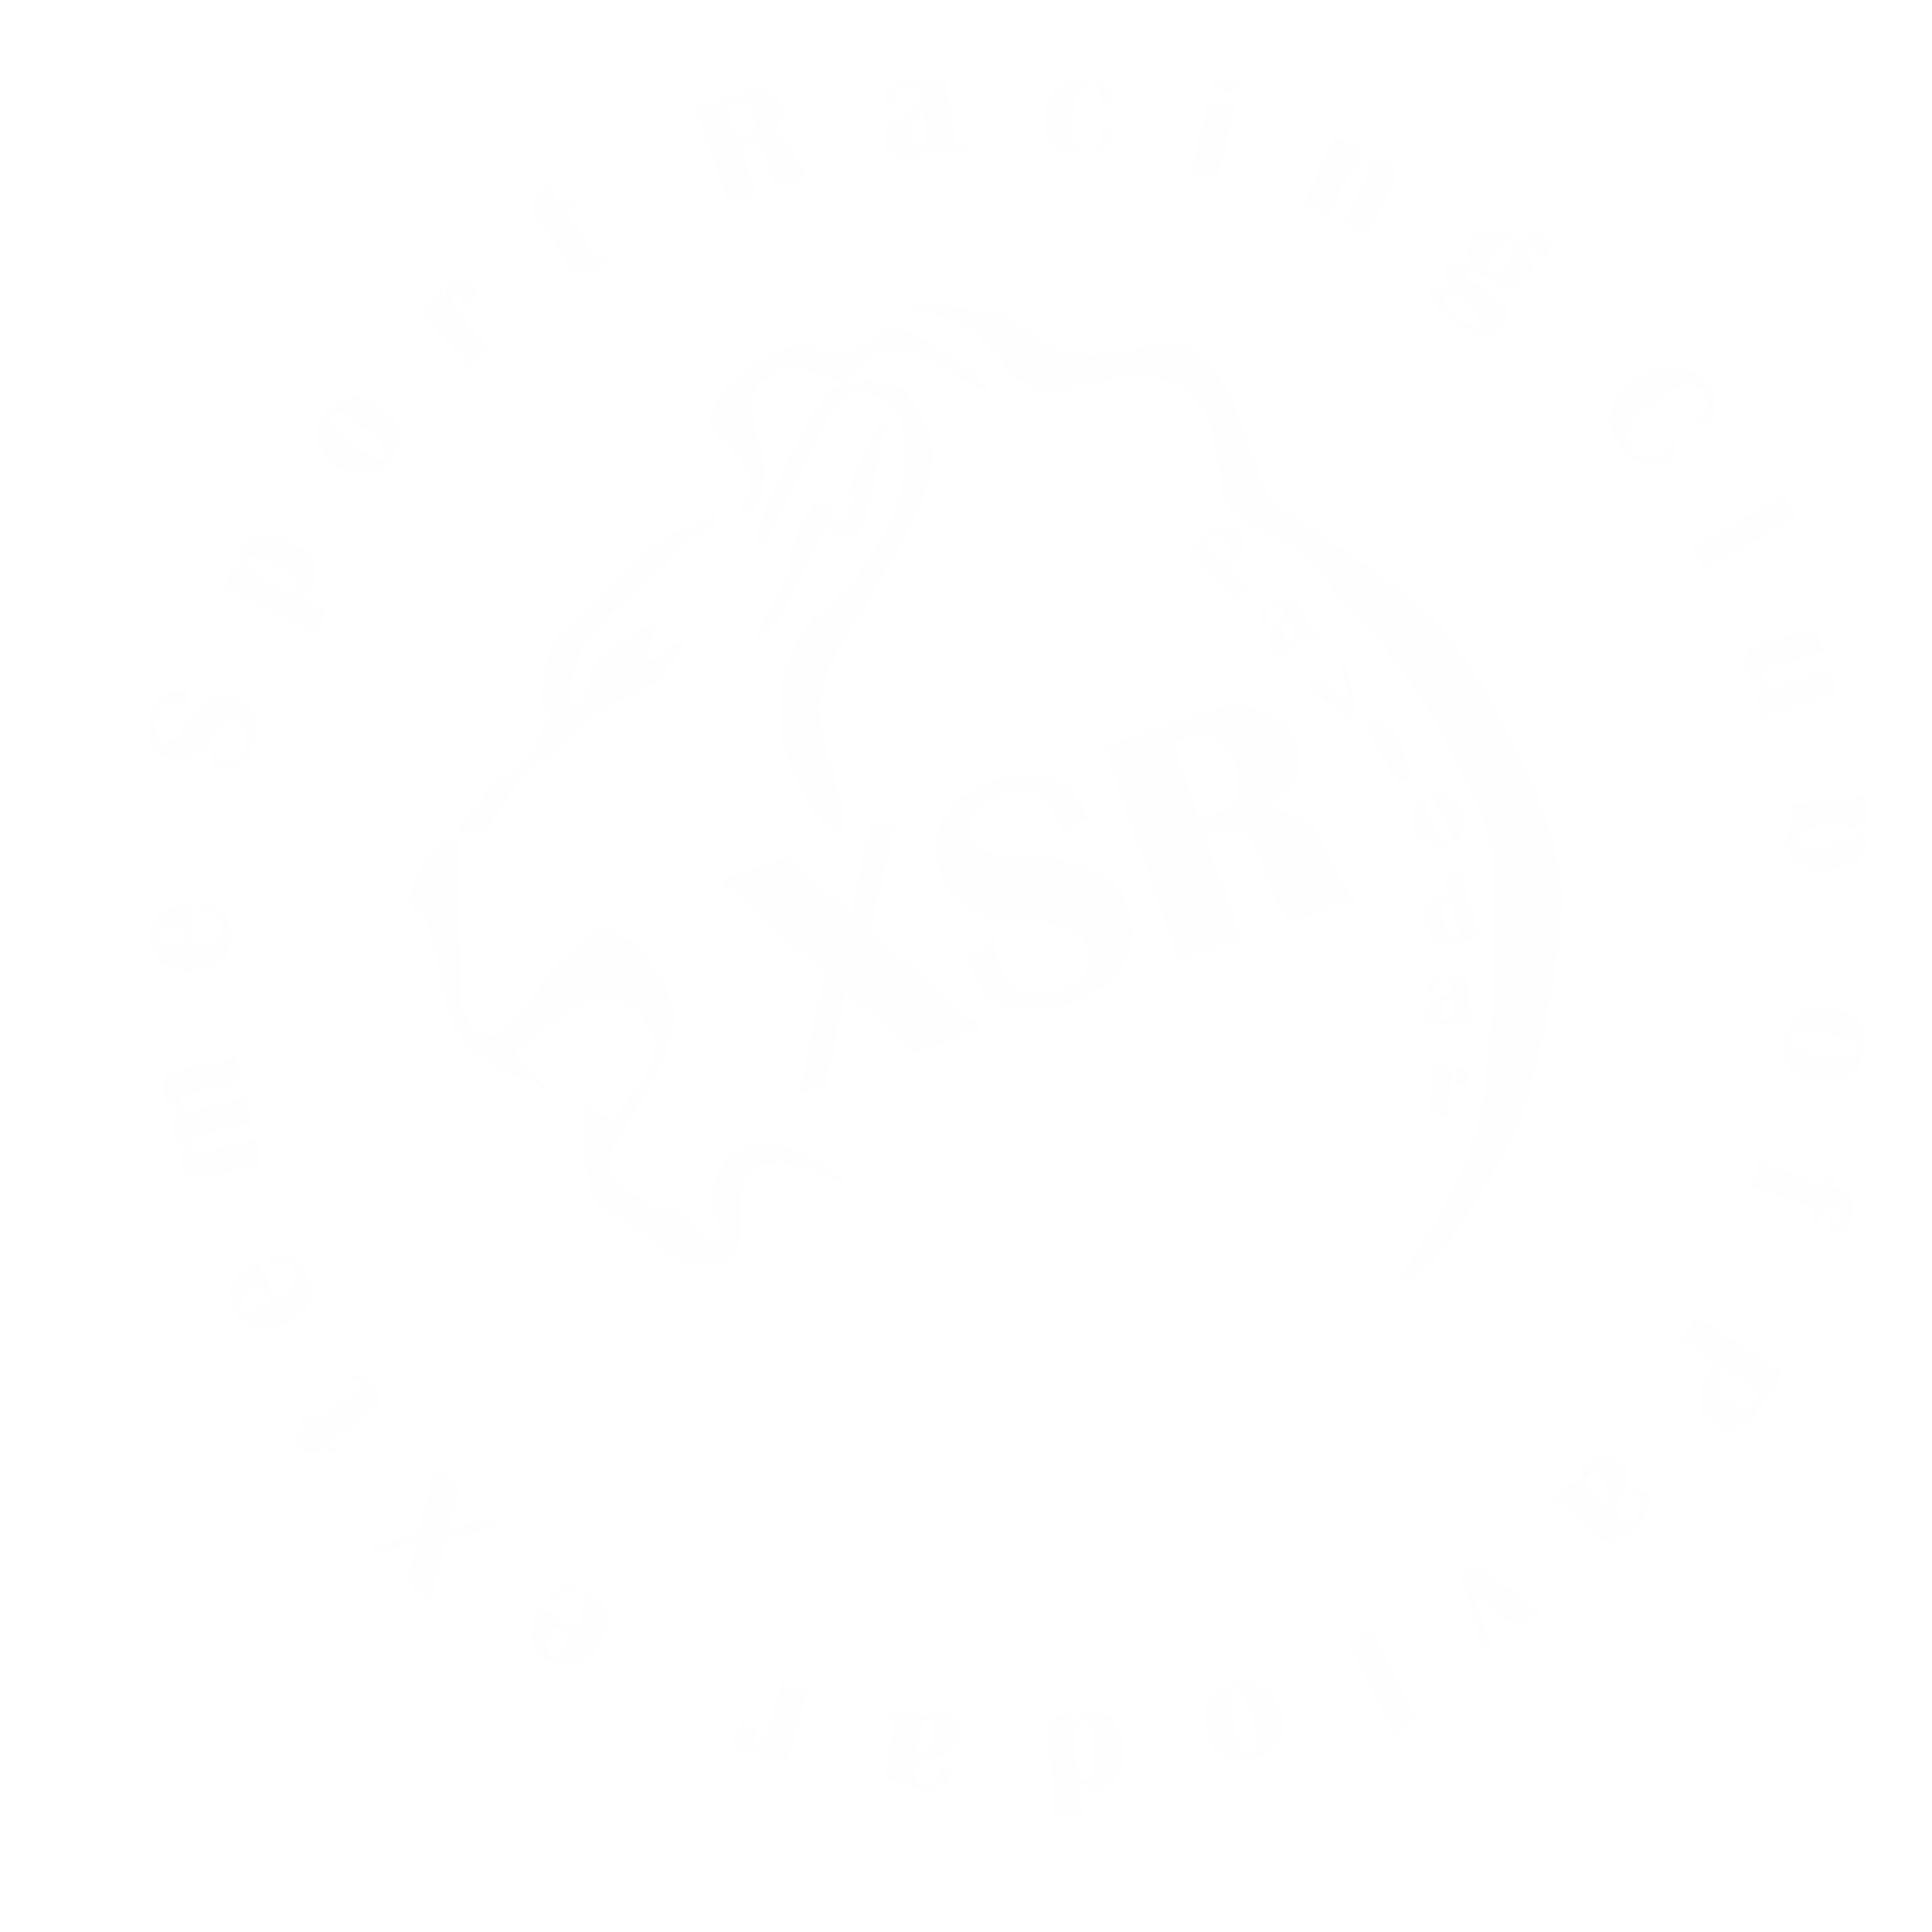 XSR logo 2016 white 2000